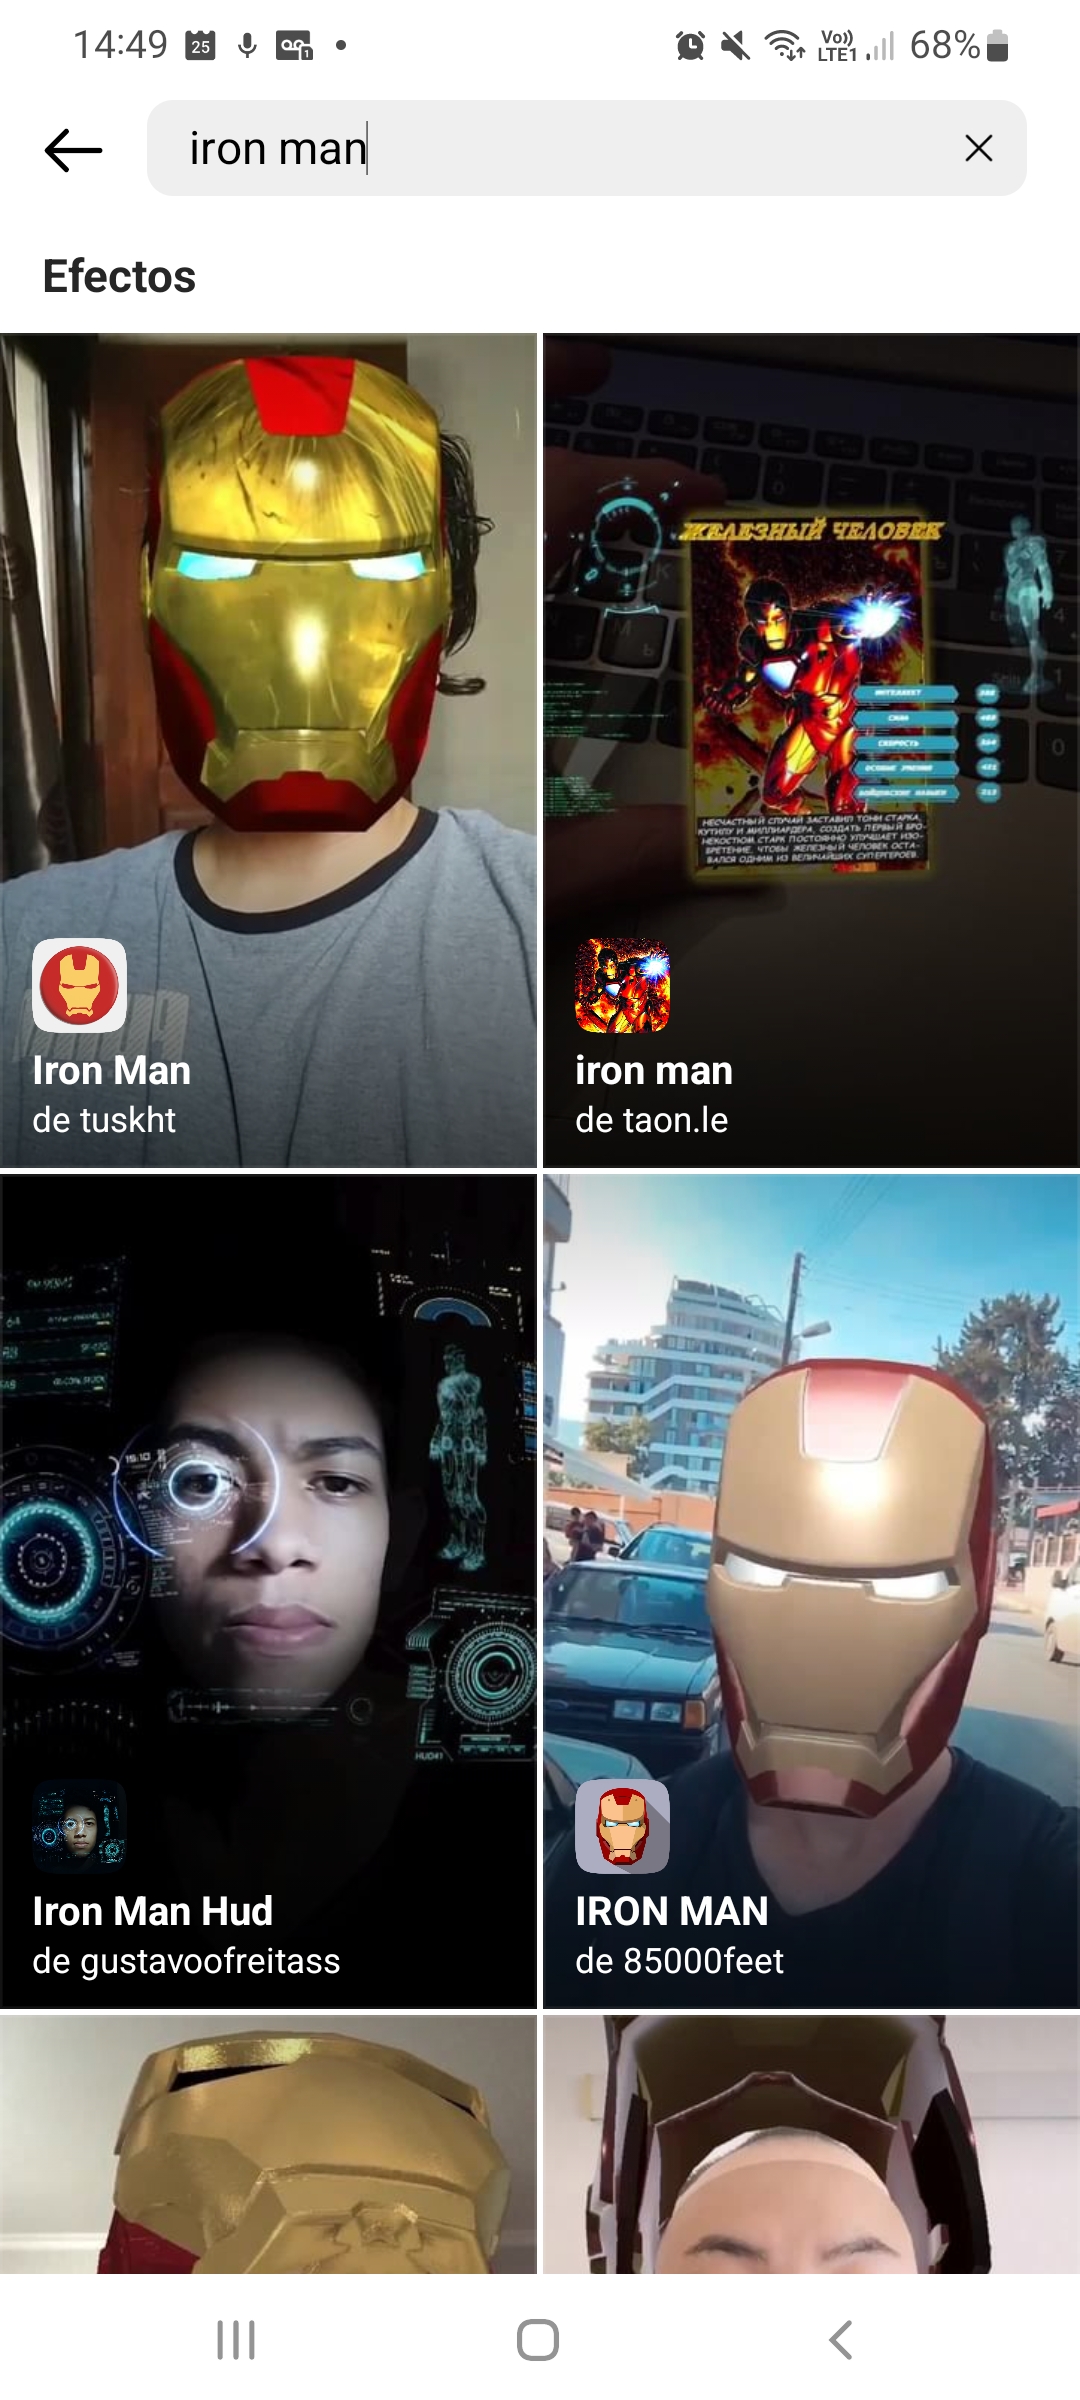 Filtros de Iron Man en Instagram